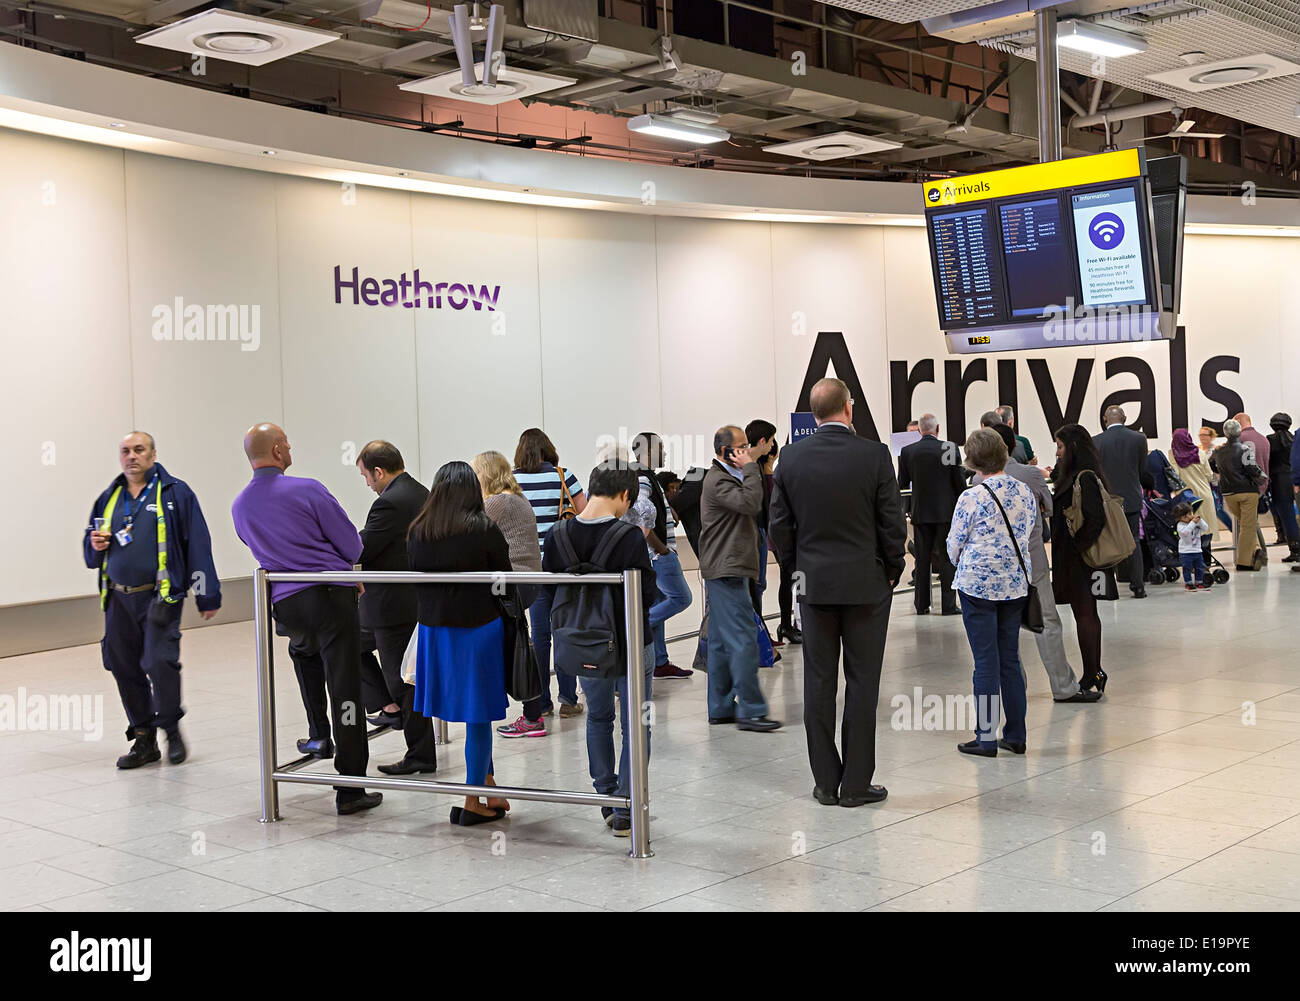 L'aéroport de Heathrow, hall des arrivées Londres, Angleterre Banque D'Images